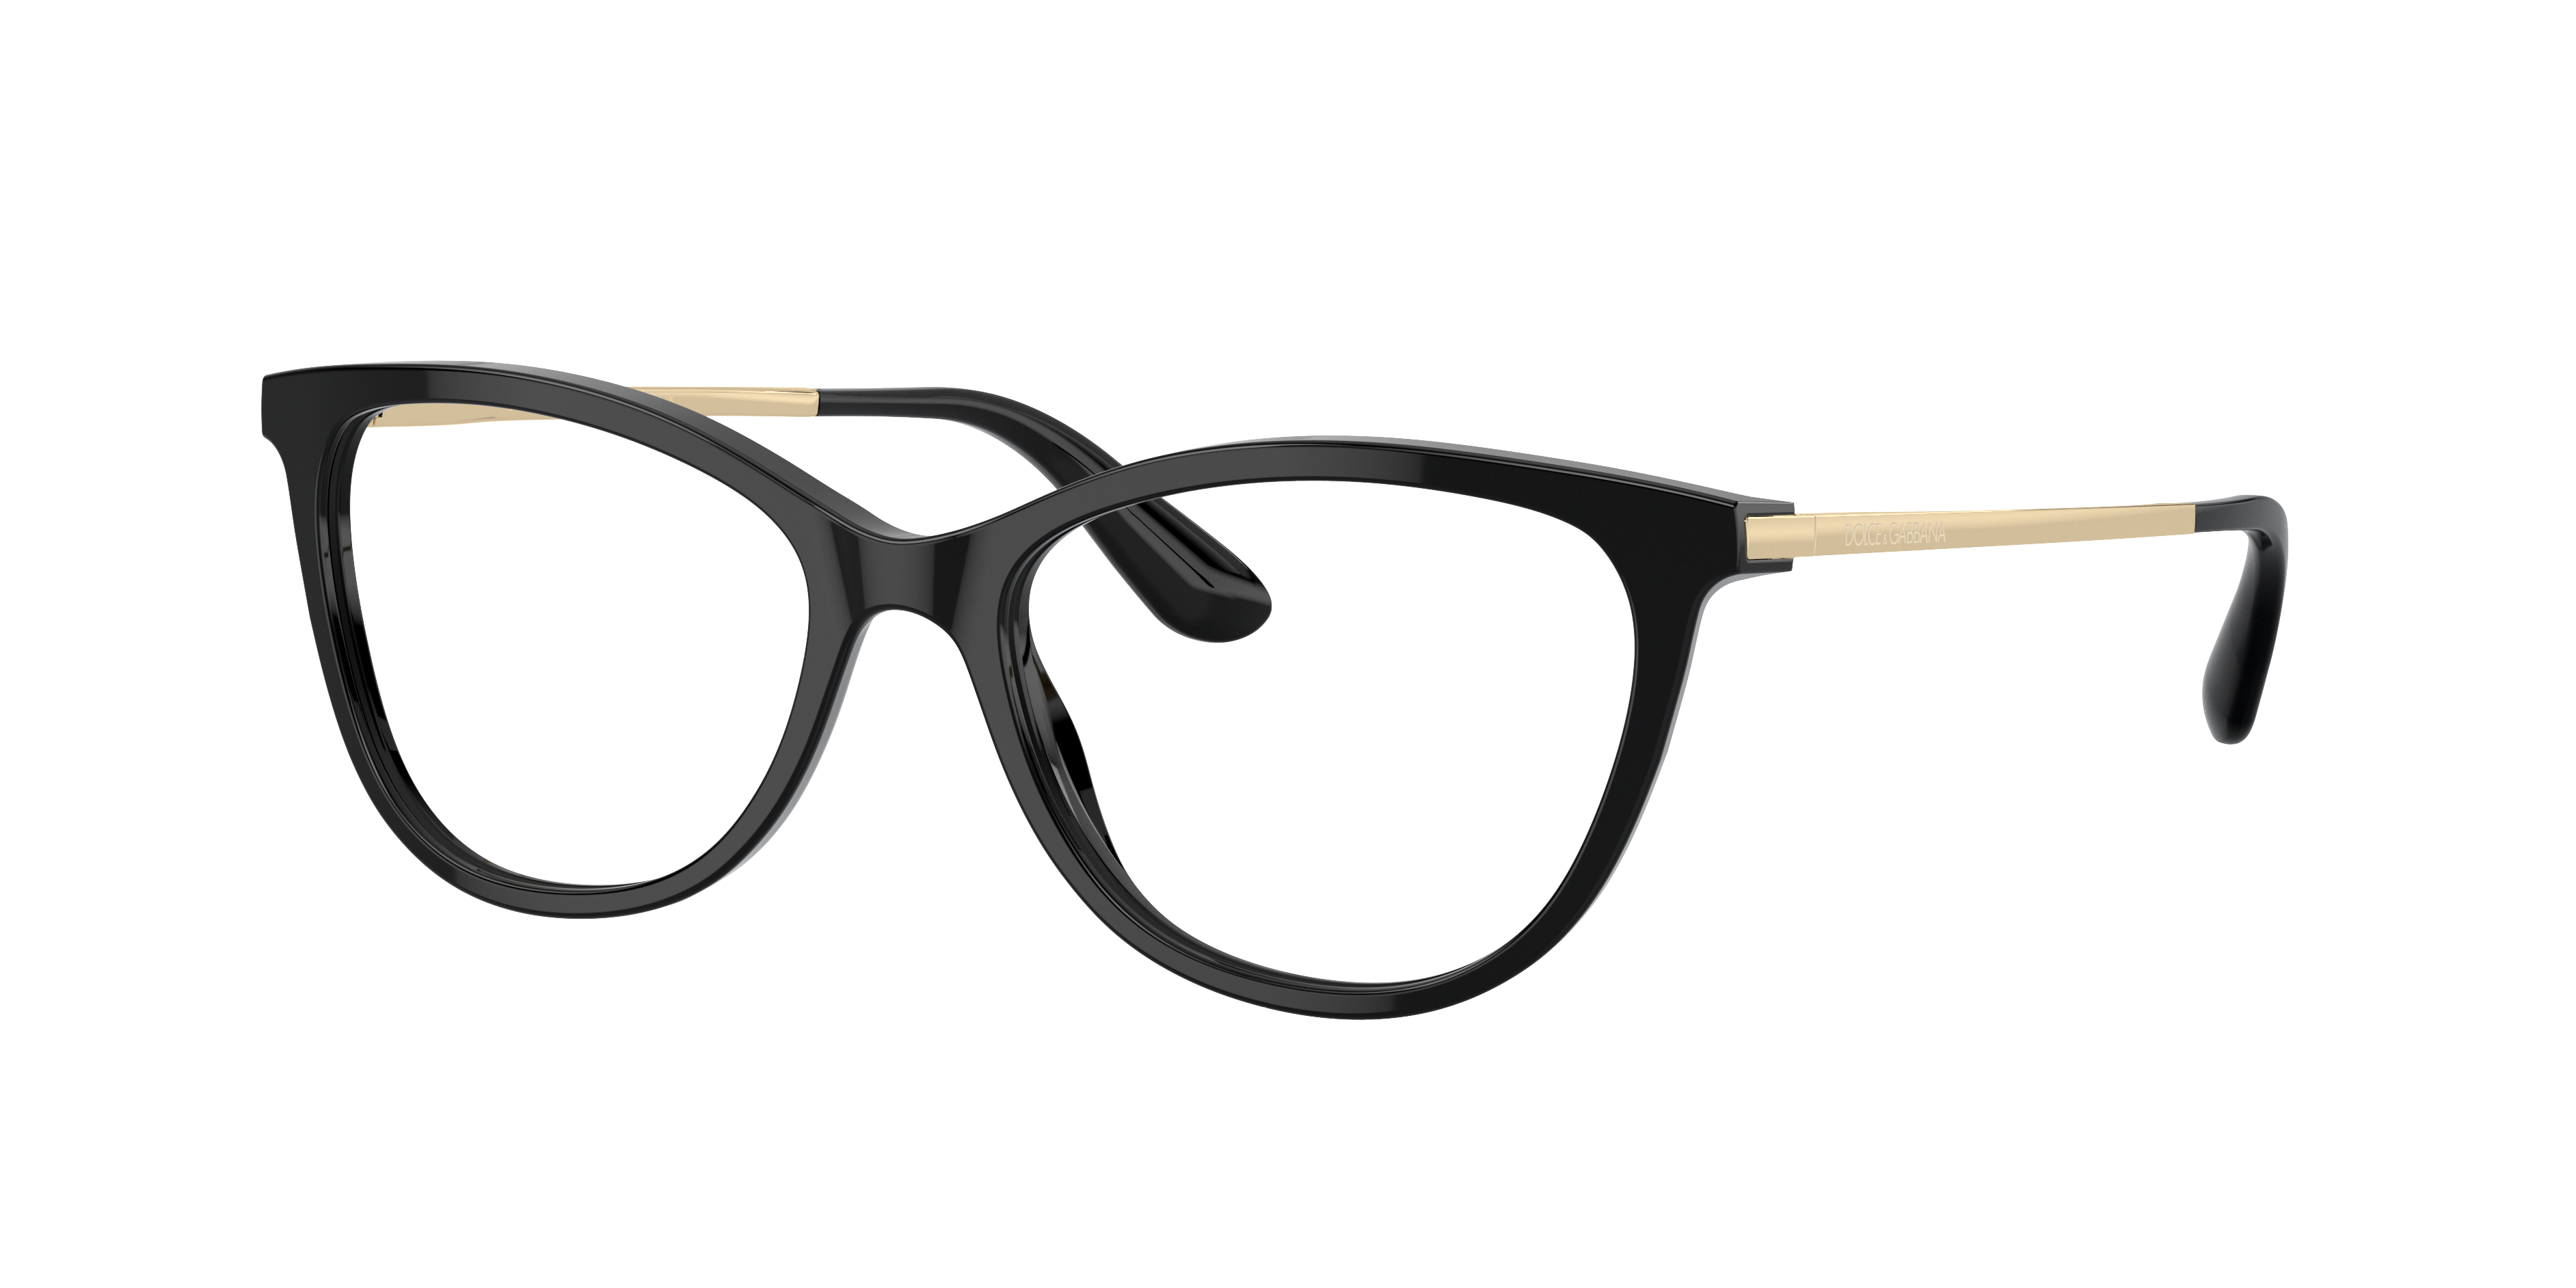 dolce & gabbana women's eyeglass frames